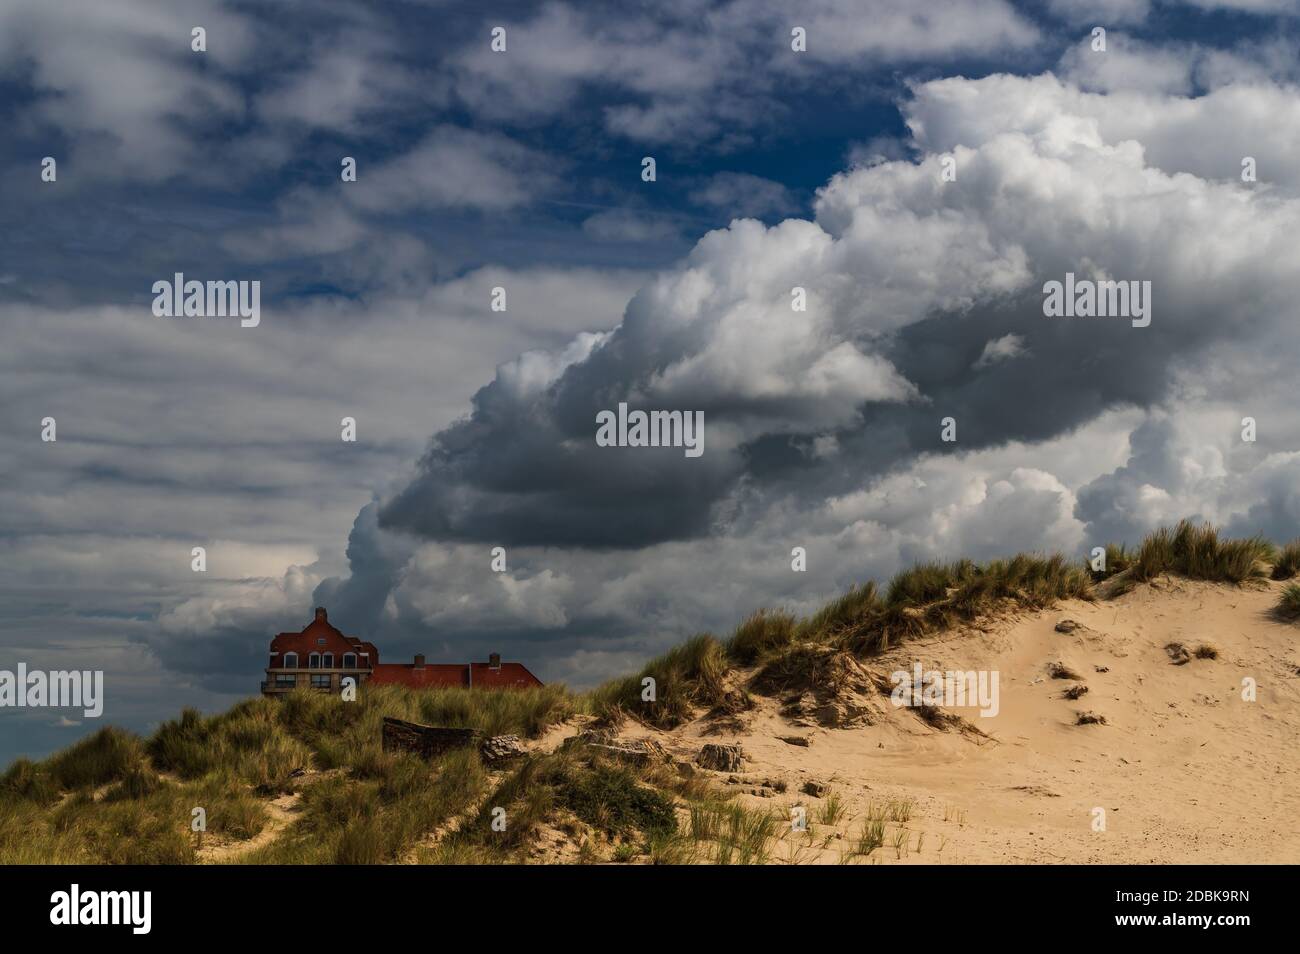 Von den zerstörten Dünen aus gesehen scheint eine riesige Wolke aus einem Gebäude zu kommen. Stockfoto